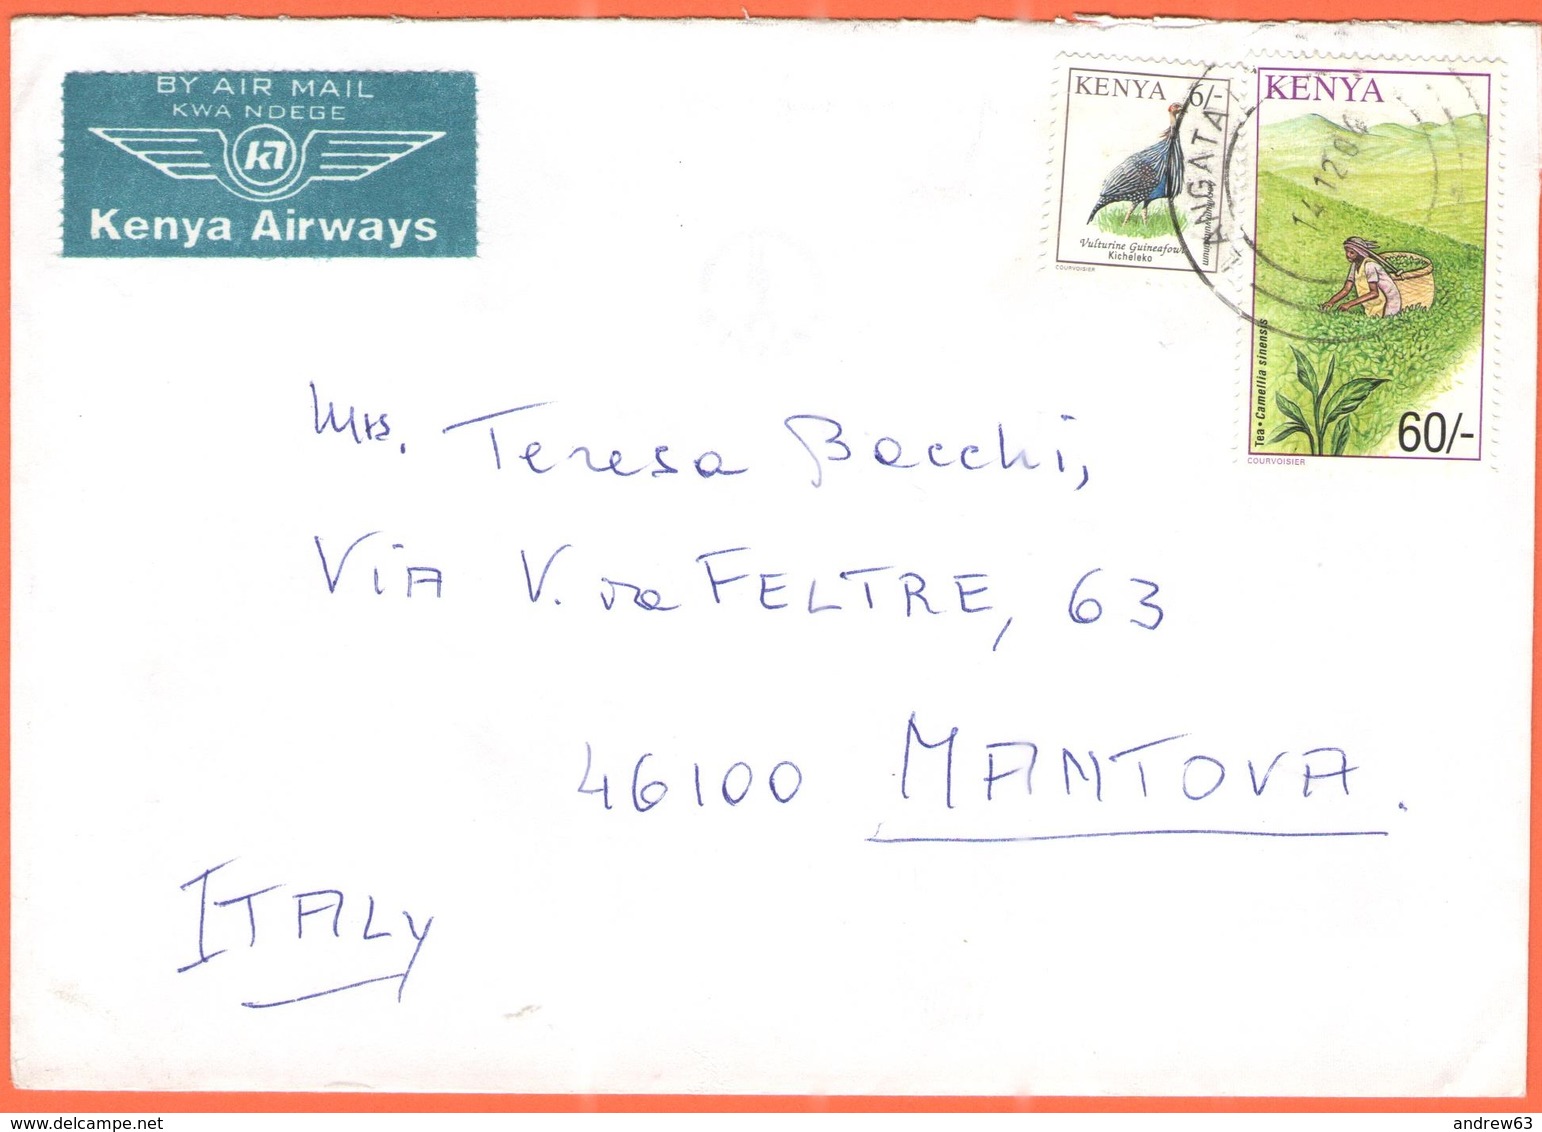 KENYA - 2004 - 6 Kicheleko + 60 Tea - Kenya Airways - Airmail - Viaggiata Da Langata Per Mantova - Kenia (1963-...)